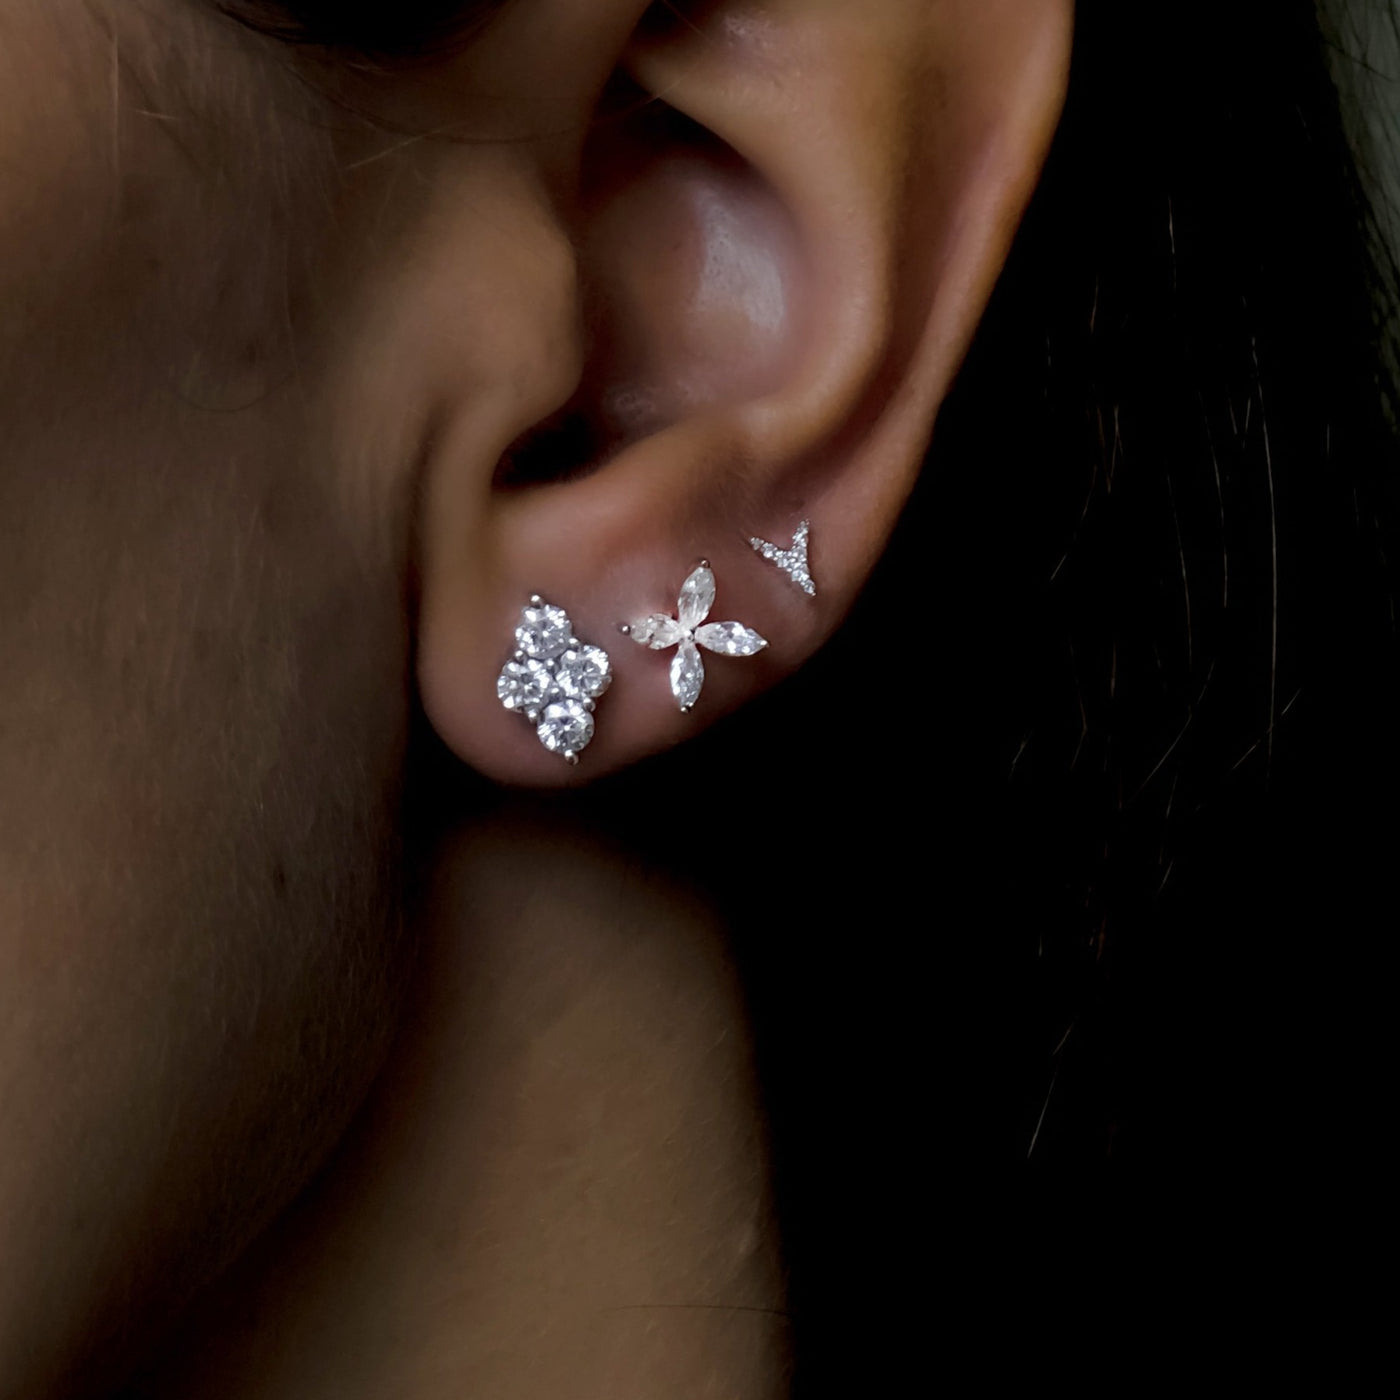 Envol earrings - one piece